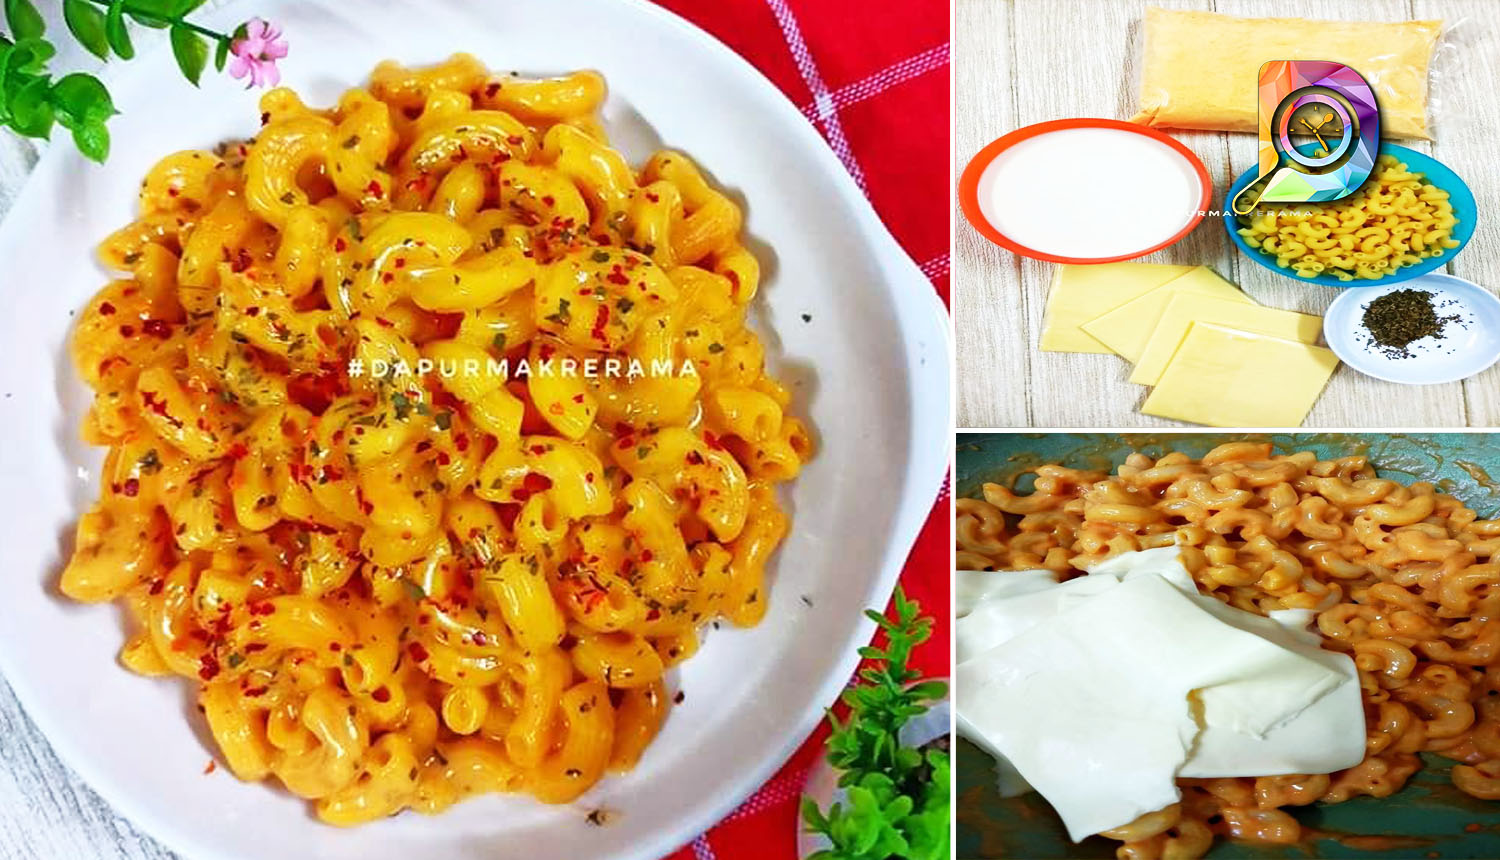 Resepi Mac And Cheese Yang Simple Dan Mudah. Hanya Menggunakan 4 Bahan